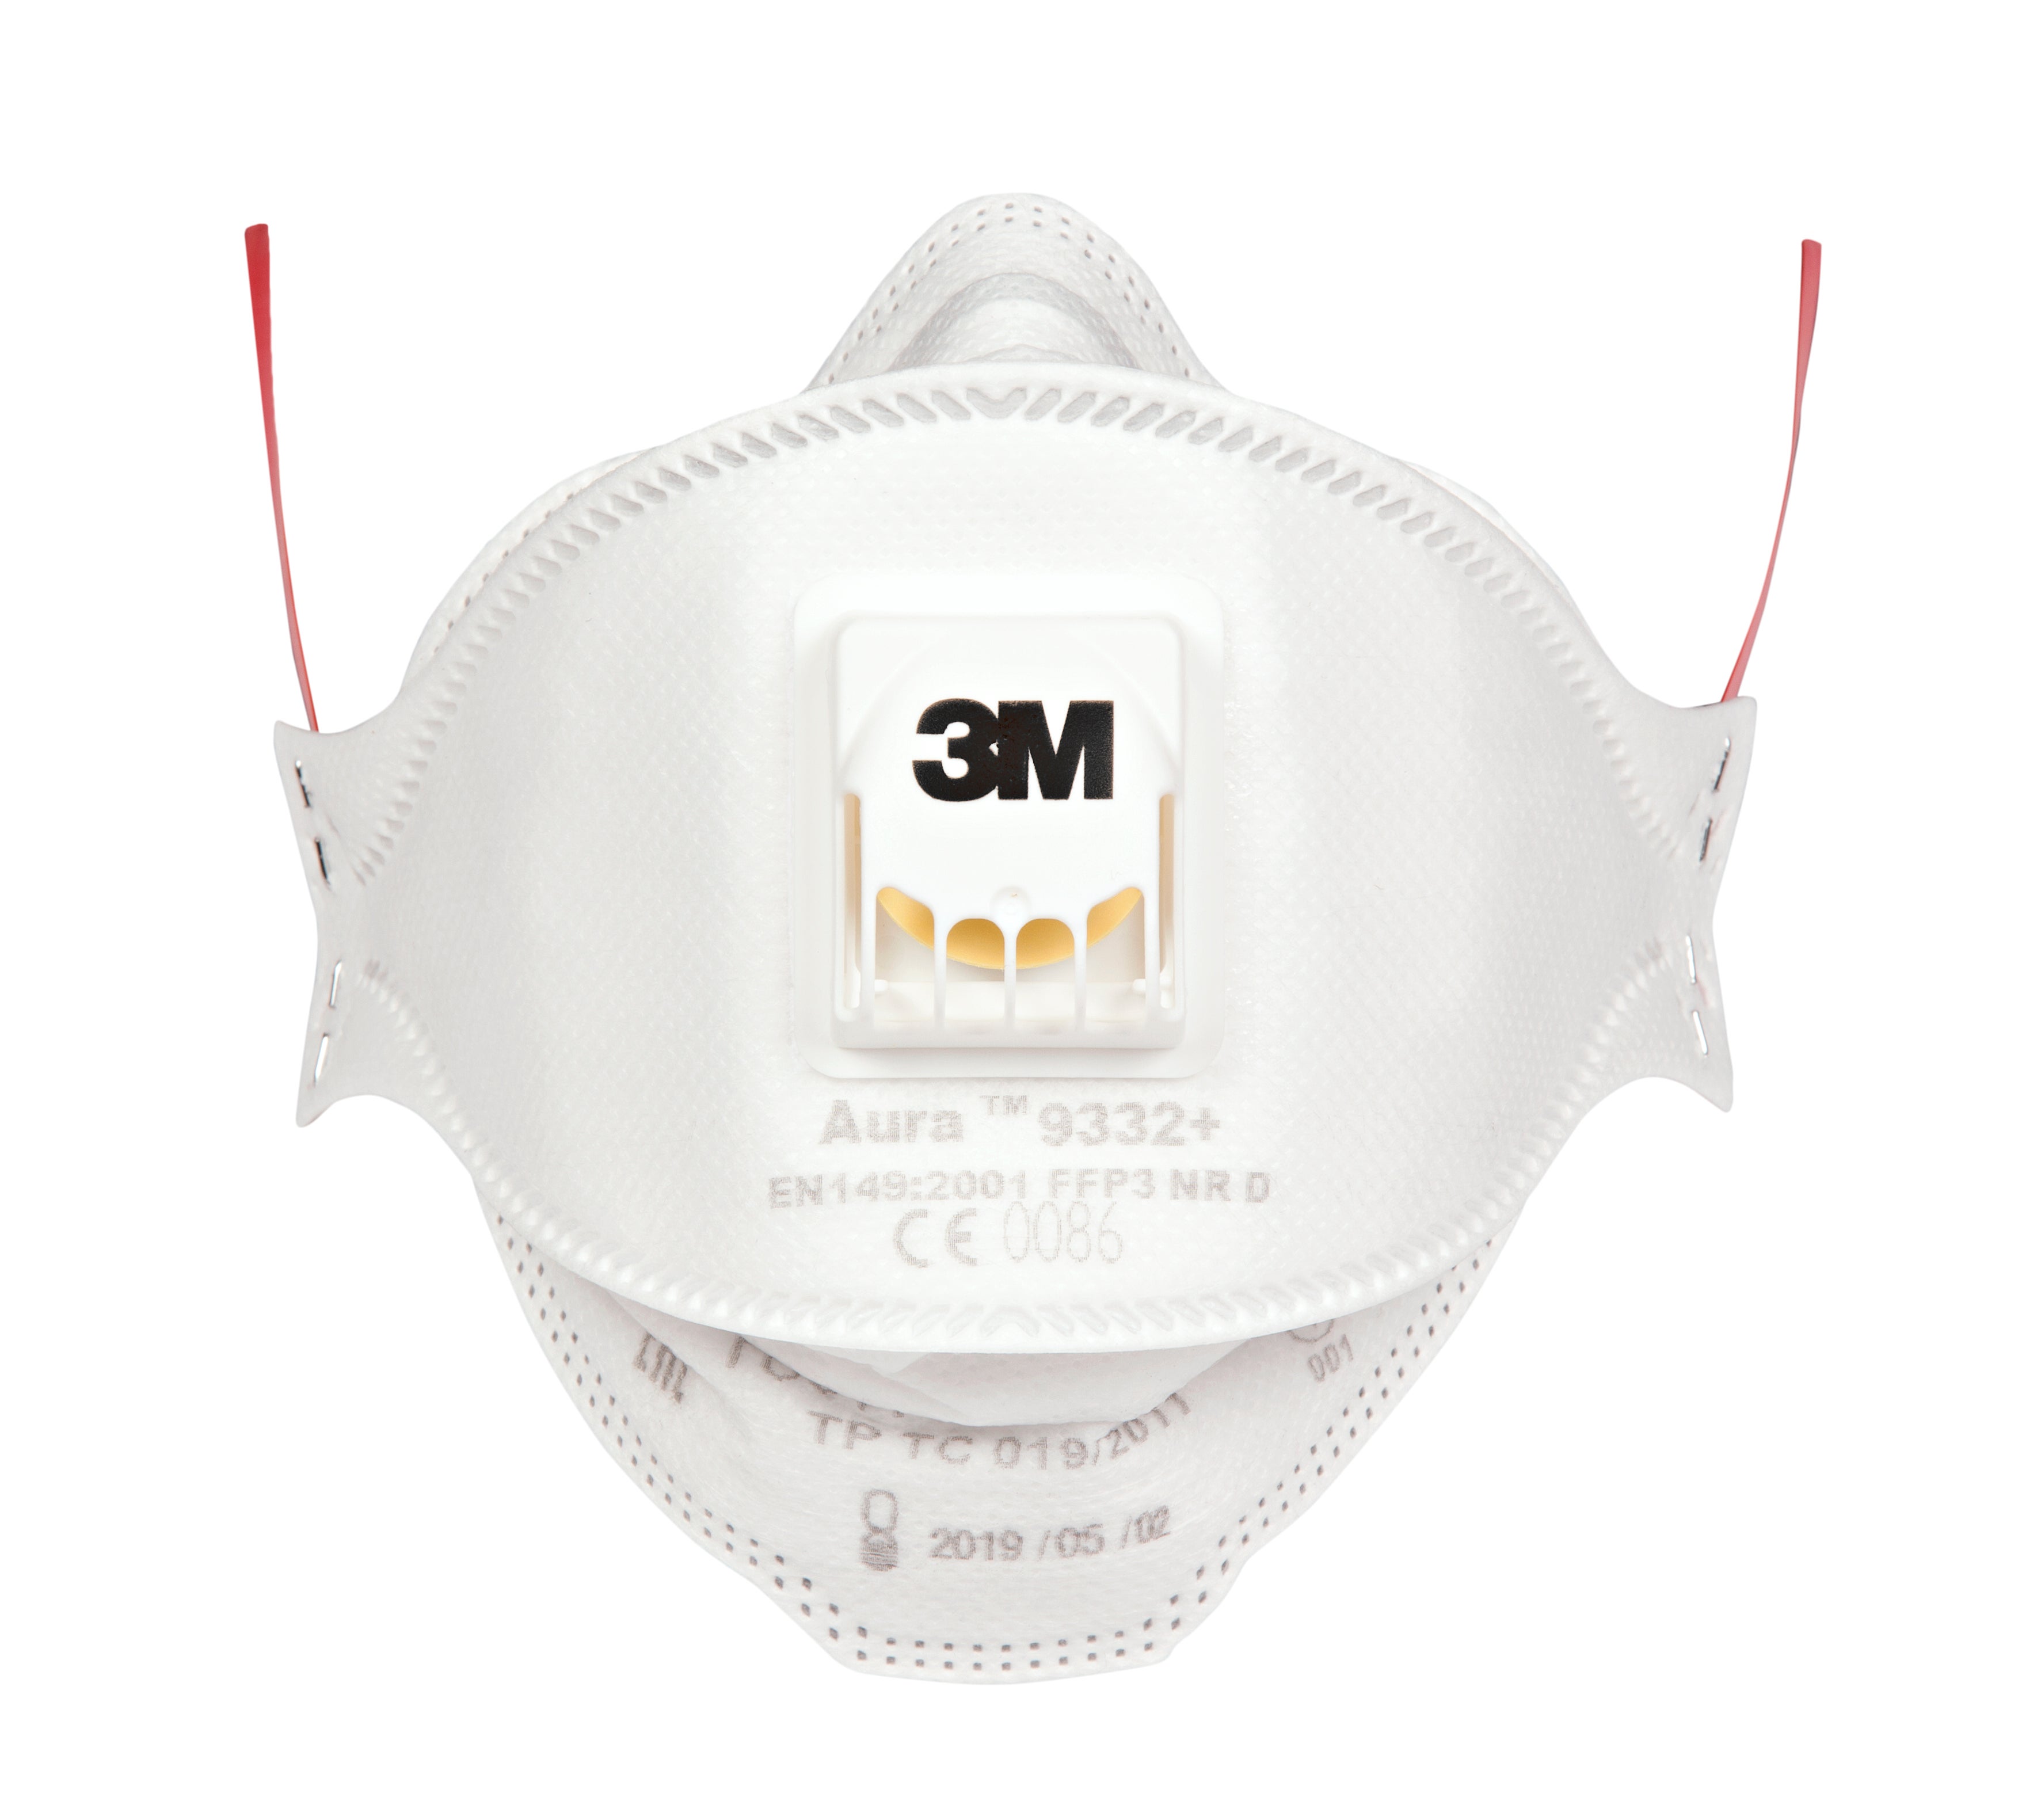 masque protection respiratoire ffp3